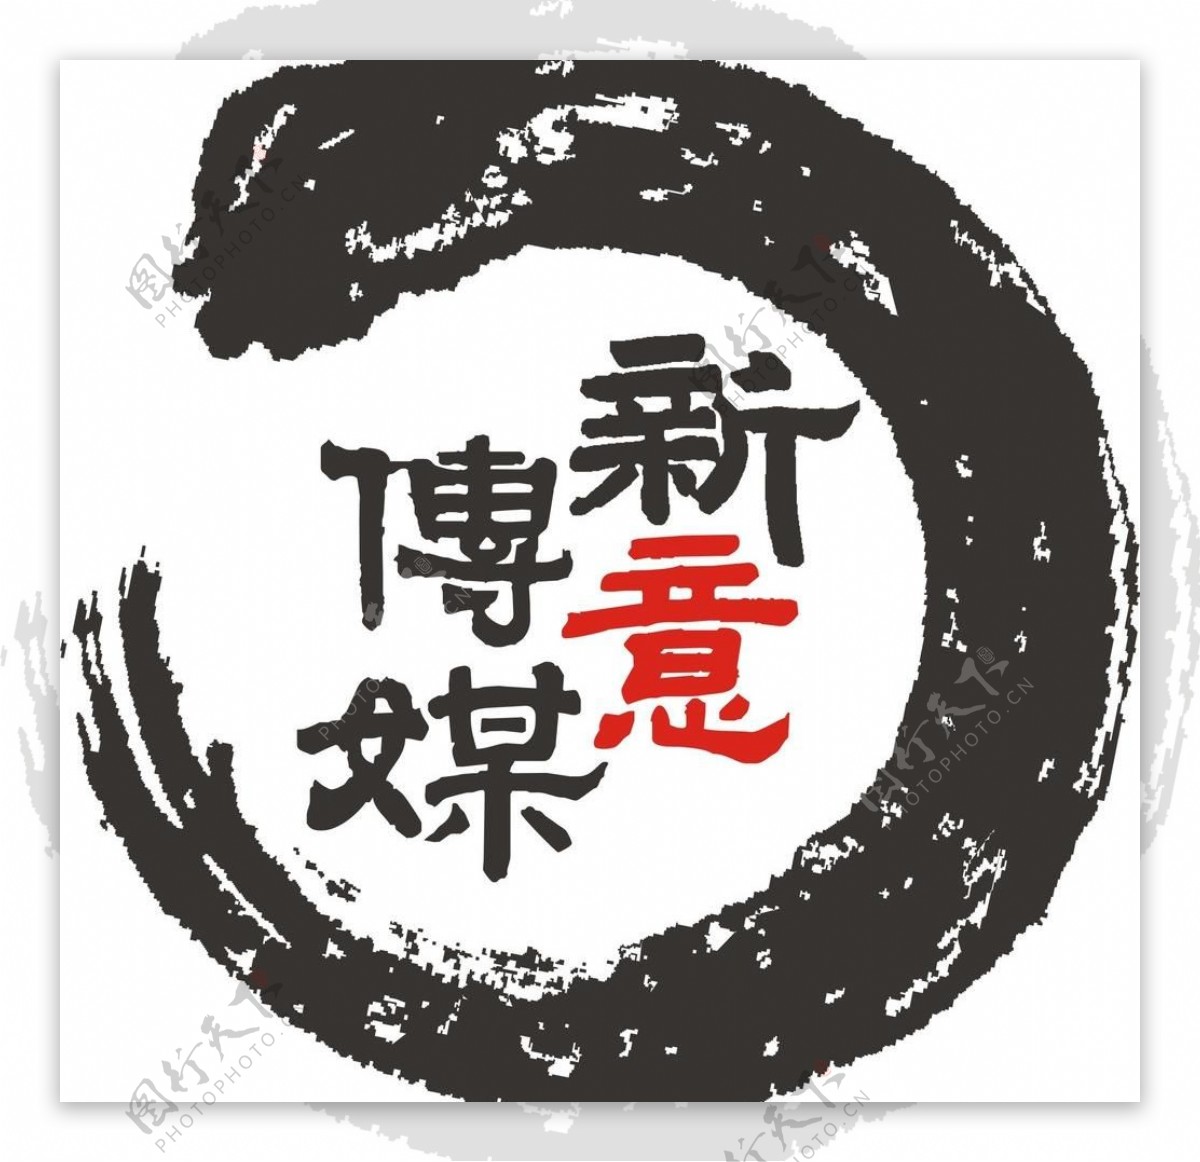 新意传媒logo图片